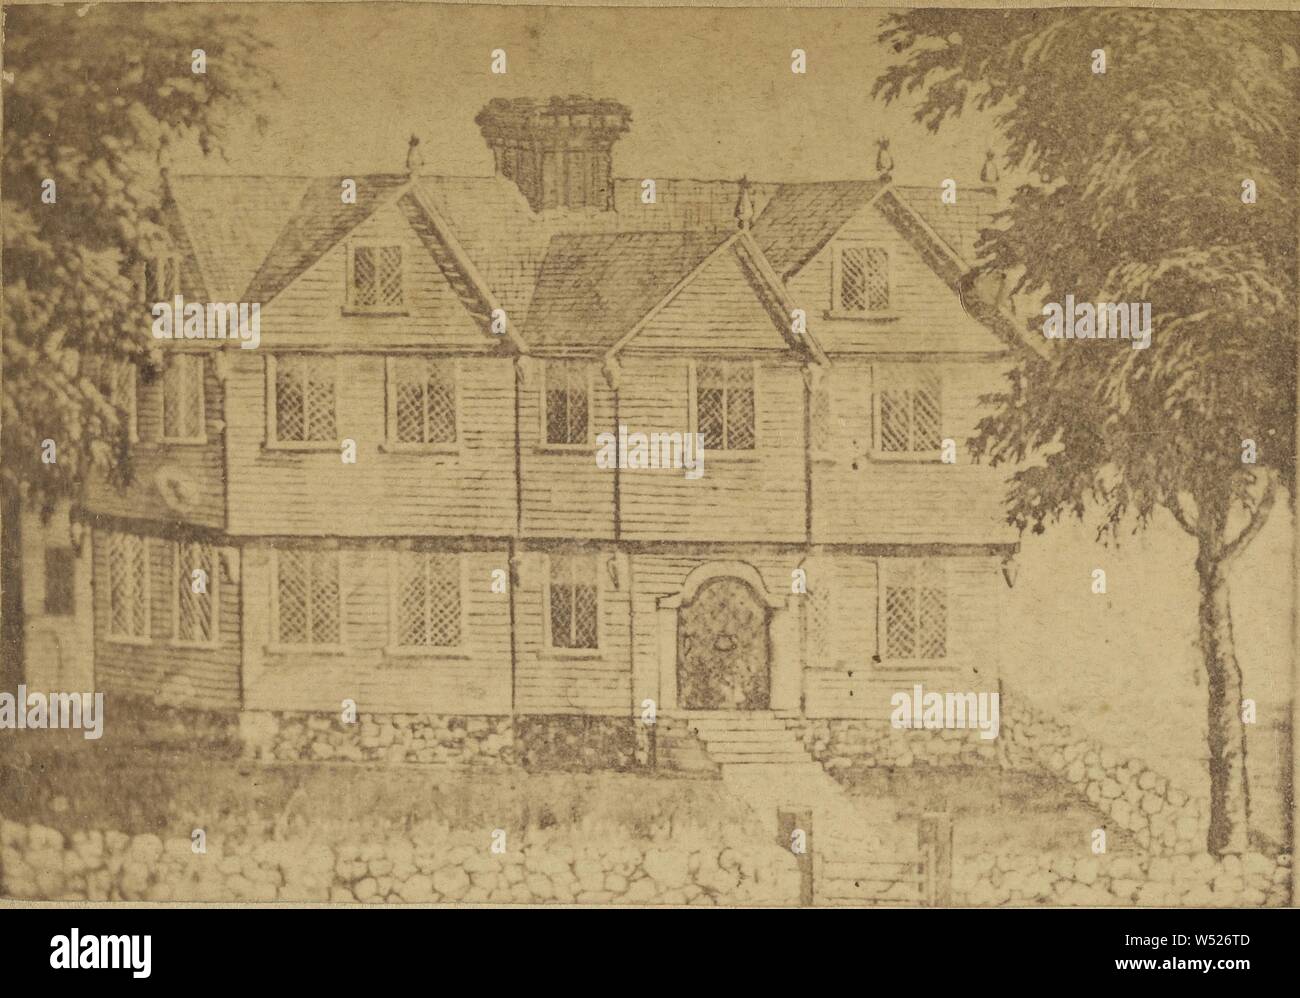 Alte Hexe Haus, Salem, Mass., Cor. Essex und Norden Straßen, von Roger Williams, 1631 gebaut ..., George S. Farrington (Amerikanisch, aktive 1860s), ca. 1860, Eiweiß silber Drucken Stockfoto